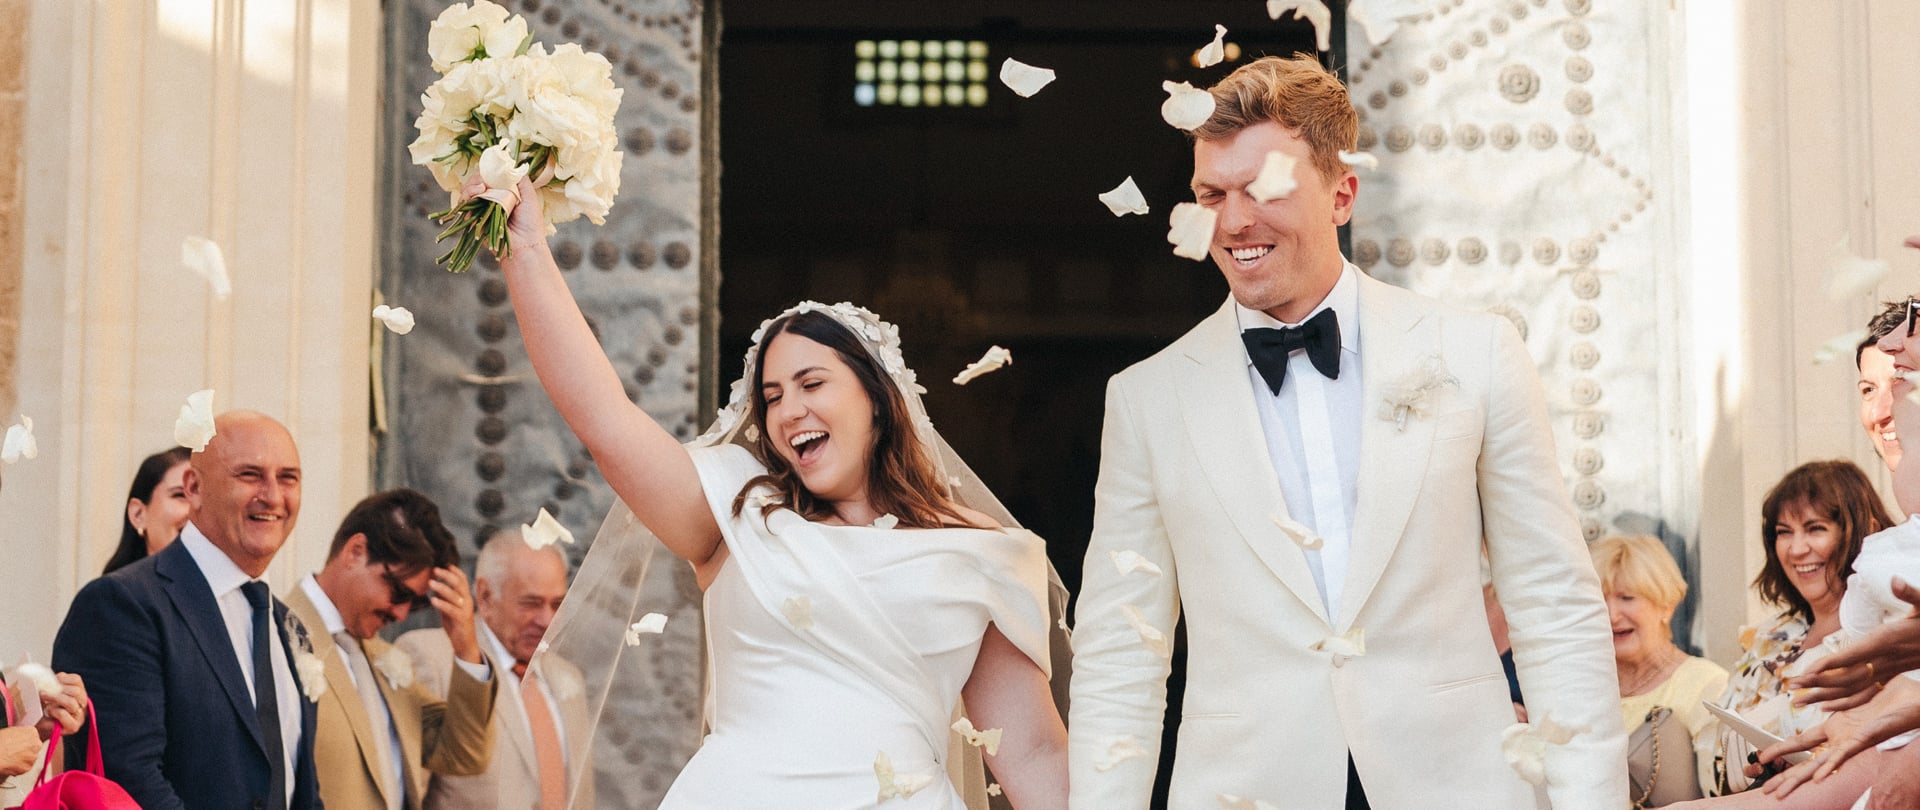 Cass & Robbie Wedding Video Filmed atPuglia,Italy